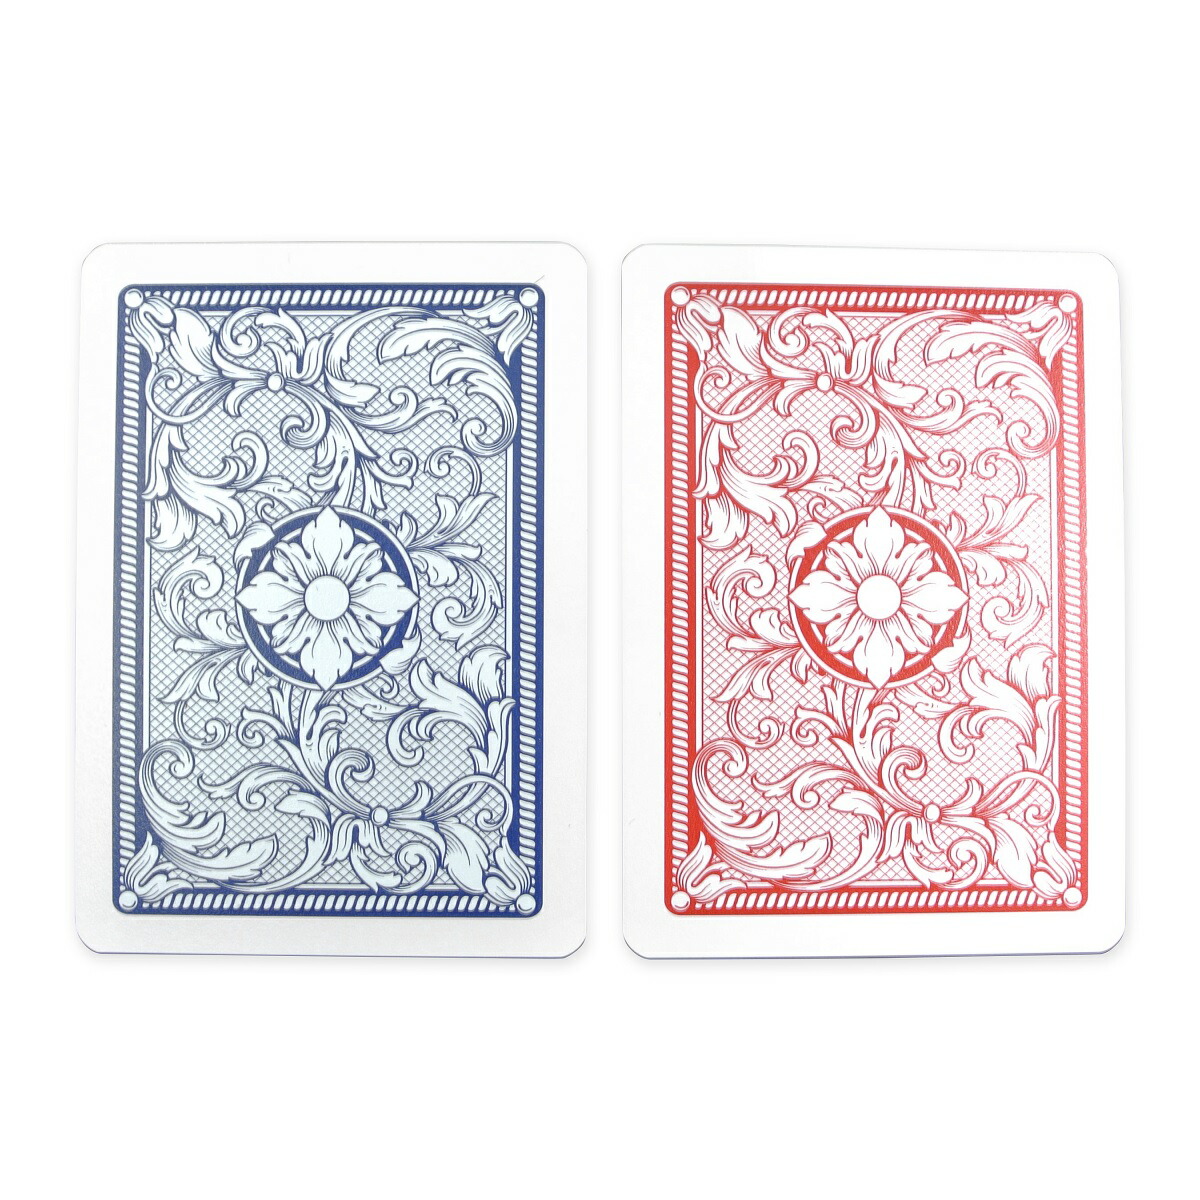 当店の記念日COPAG 4色 ポーカーサイズ カード 手品 レッド ダブルデッキ レギュラーインデックス ブルー プロ トランプ プラスチック  マジック ホビー